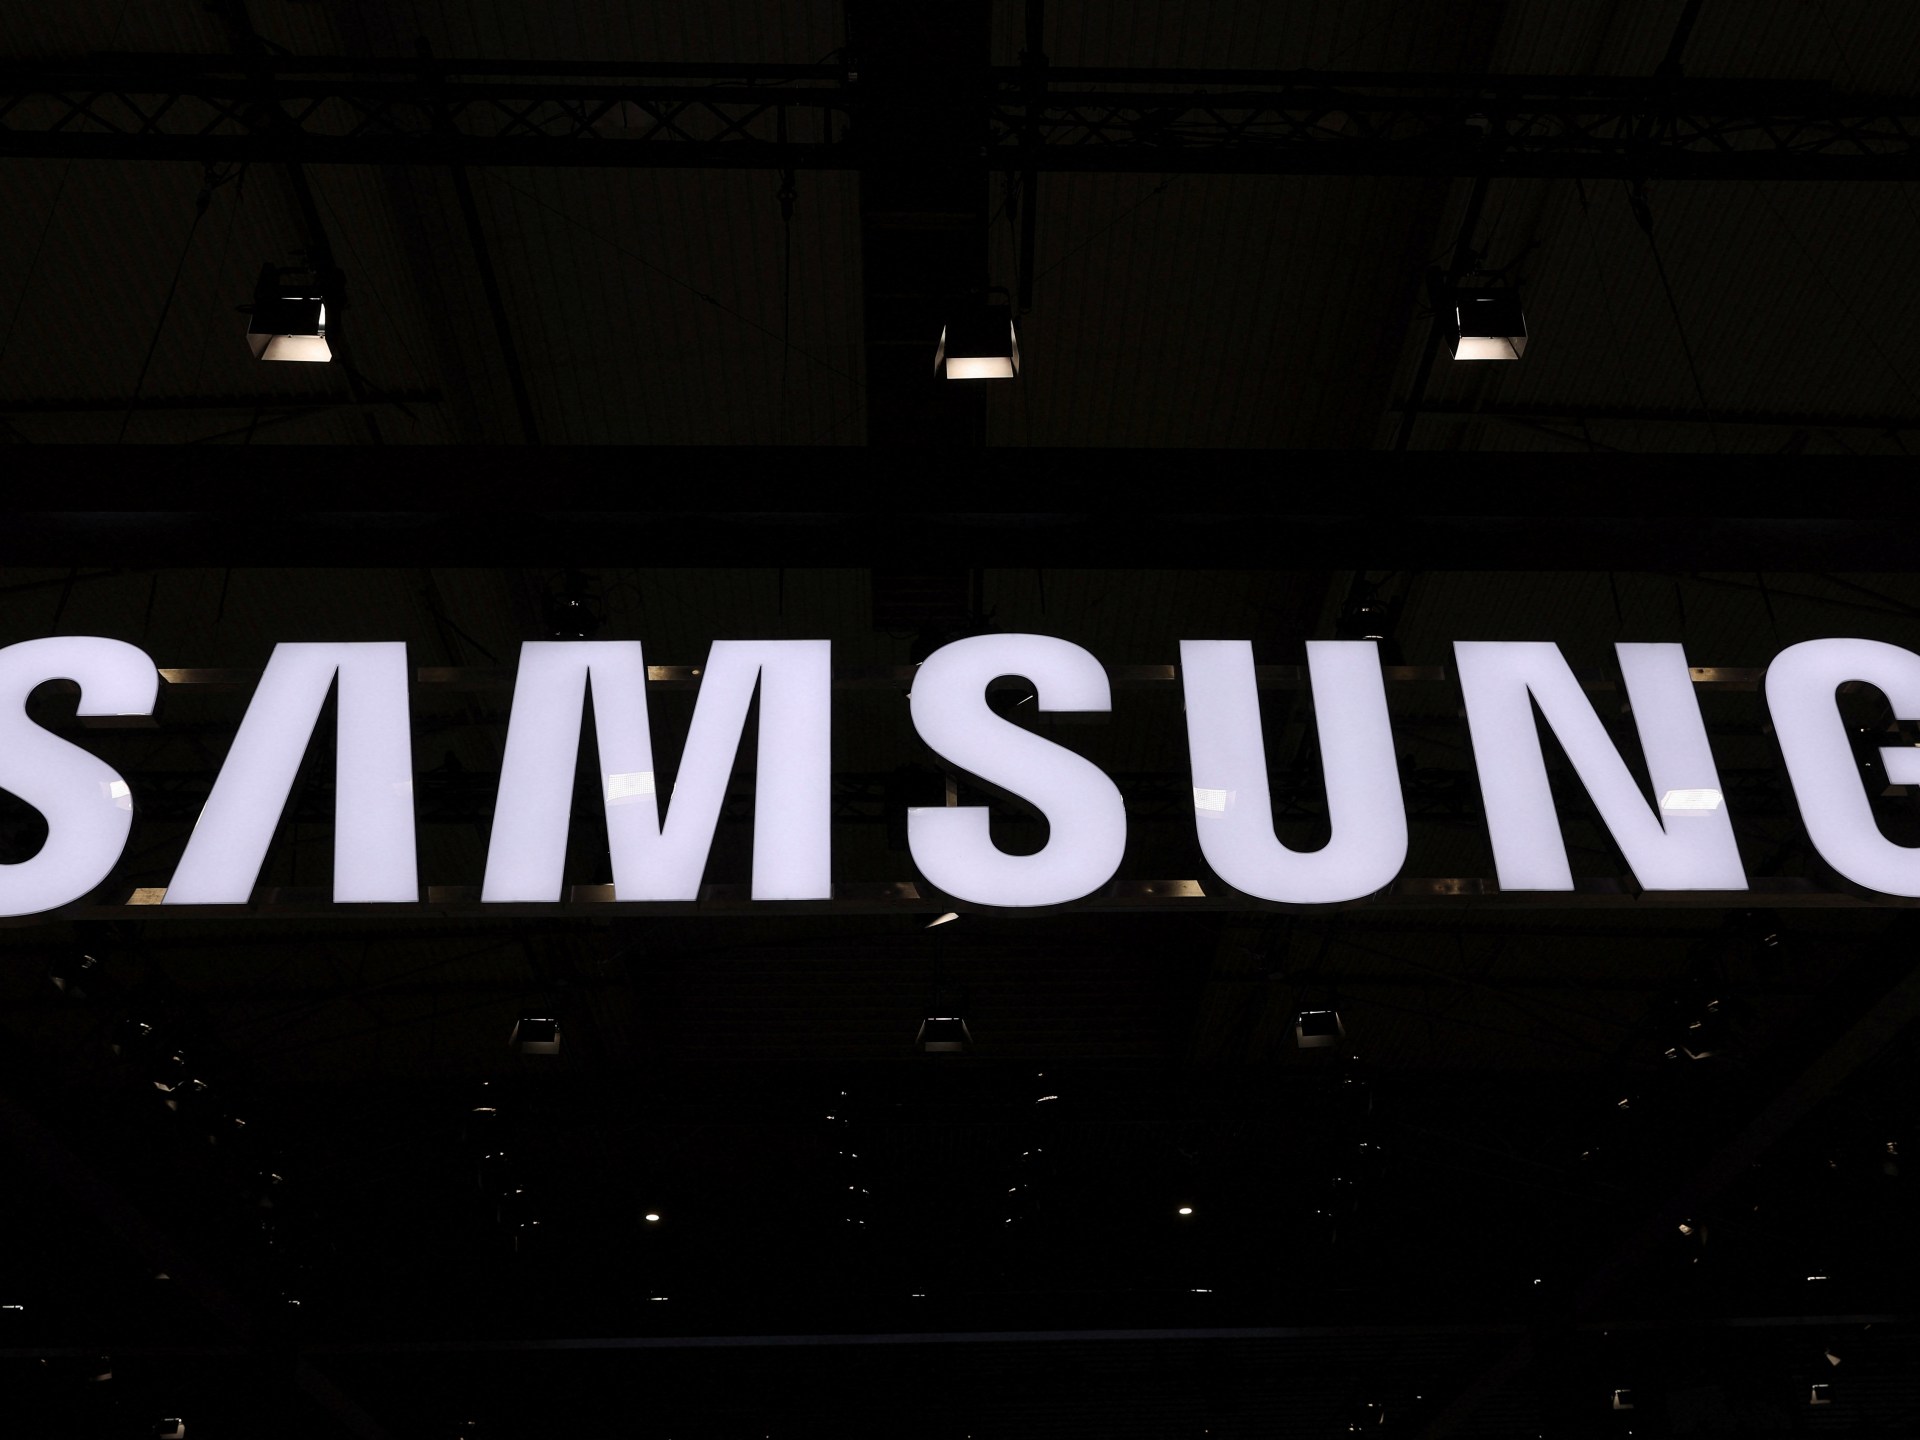 La surcoreana Samsung multiplica por 10 sus beneficios gracias a la recuperación de sus chips de memoria  Noticias de tecnología